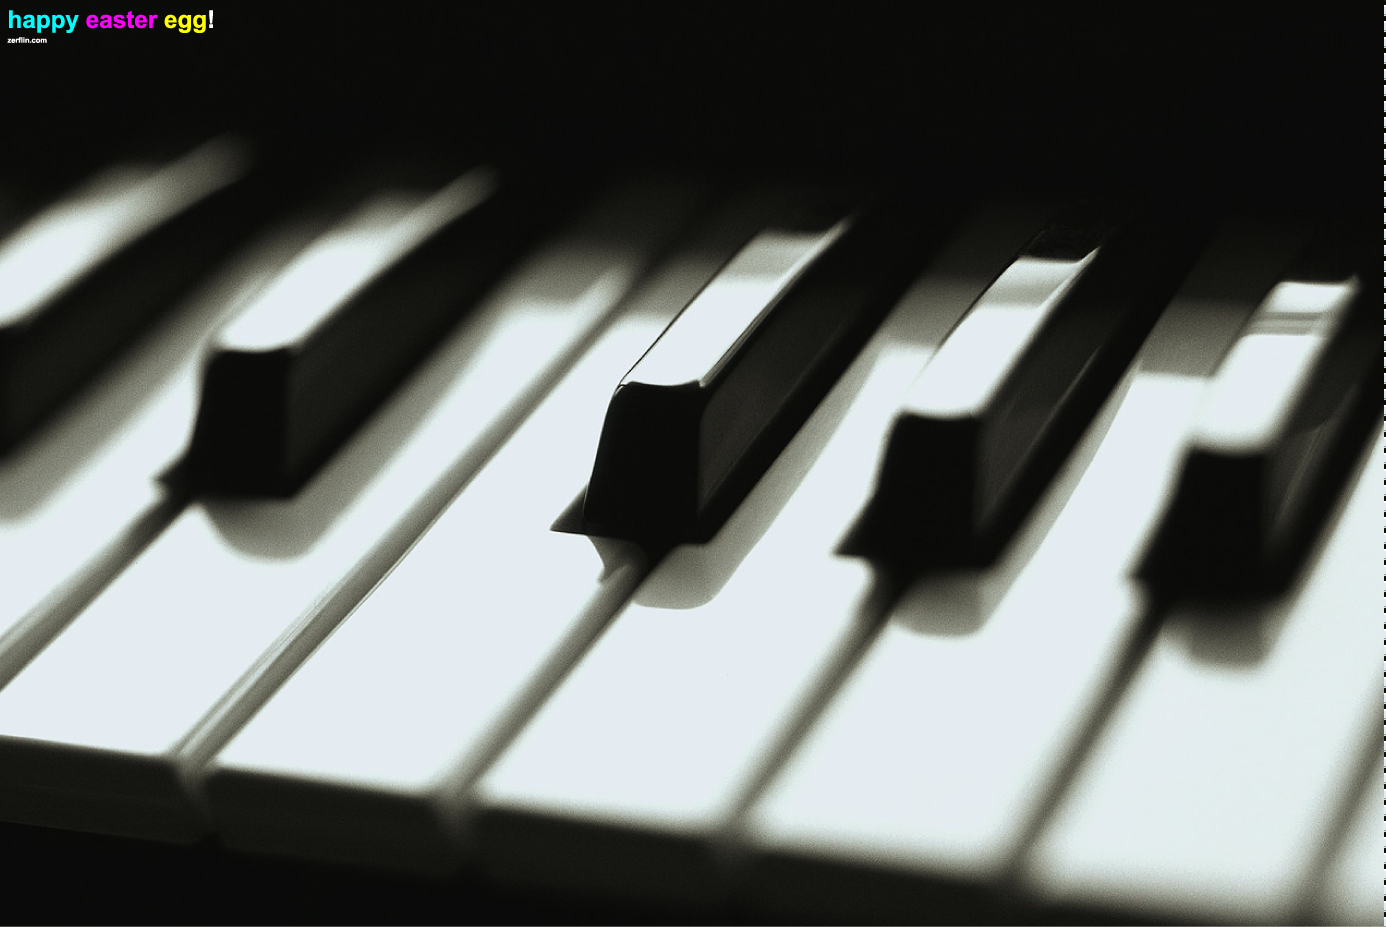 Piano Keys | Zerflin